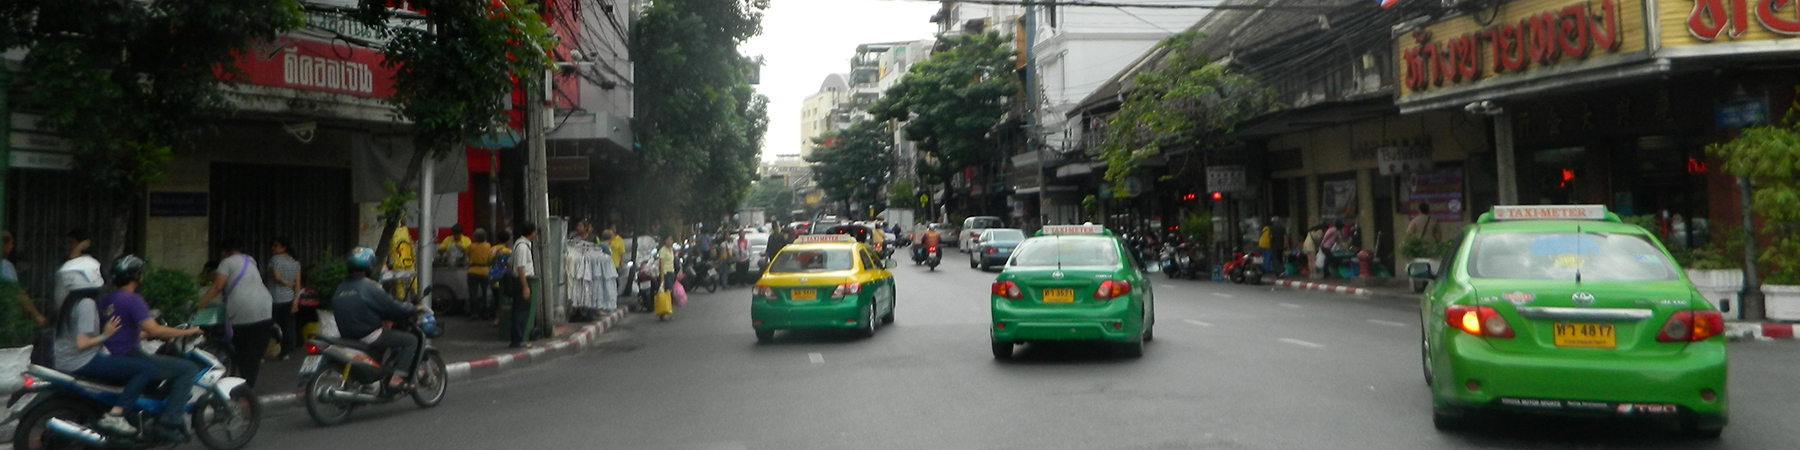 Phahurat Road, Phra Nakhon District, Bangkok Metropolis